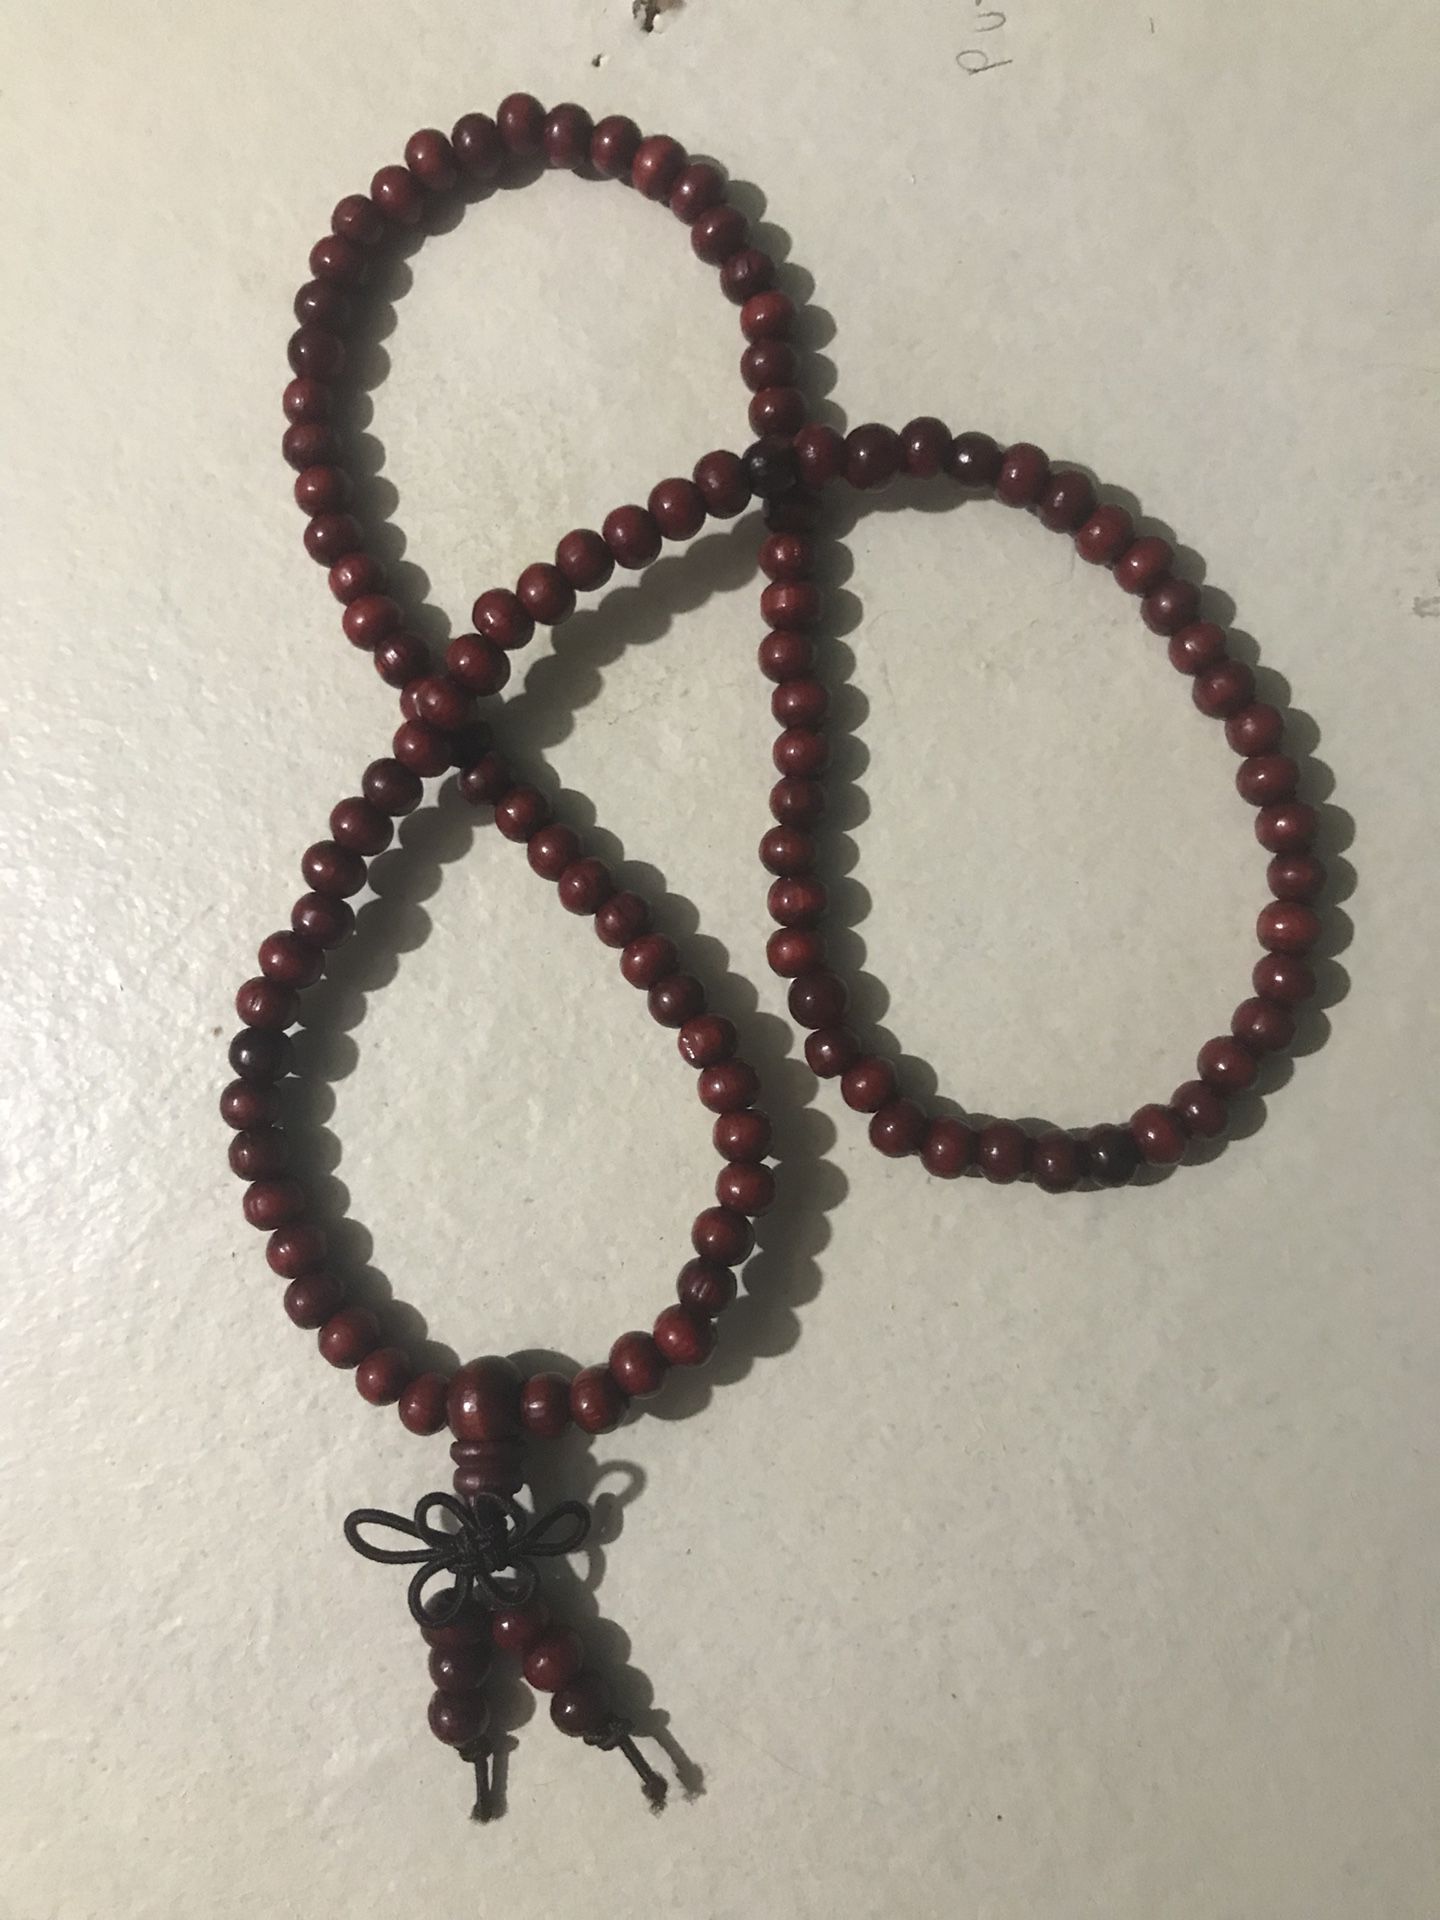 Mala beads/Buddhist meditation prayer beads